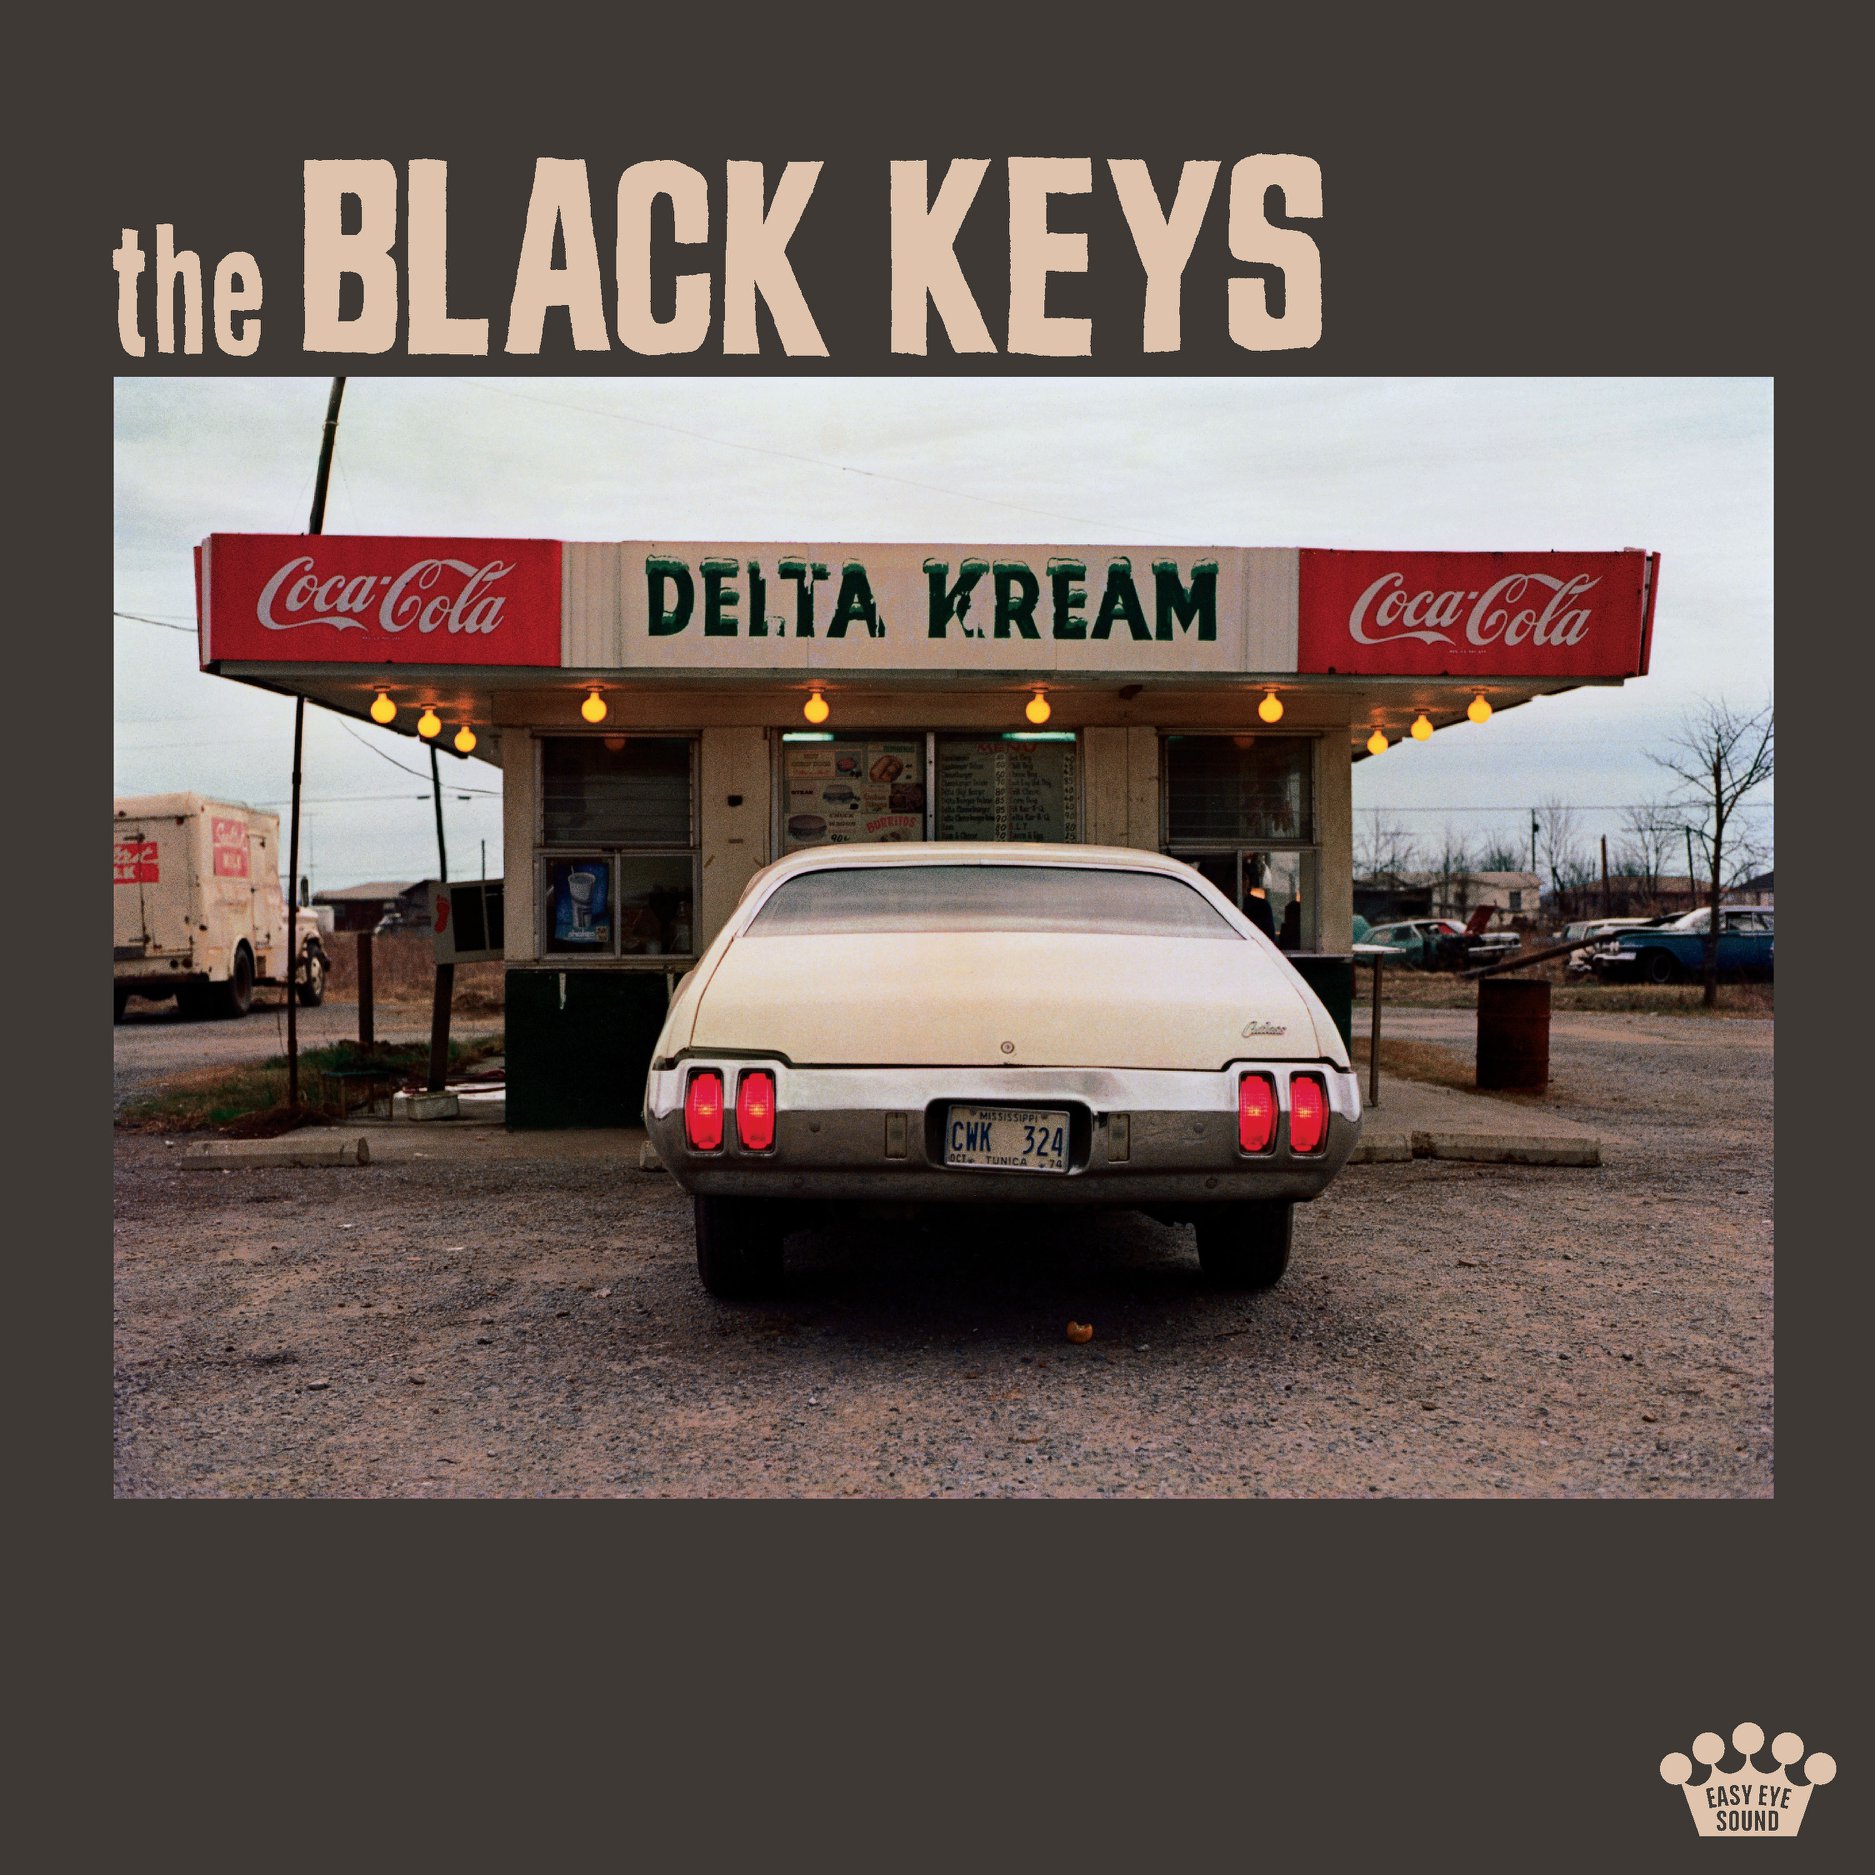 The Black Keys anuncia regreso con "Delta Kream", su nuevo disco